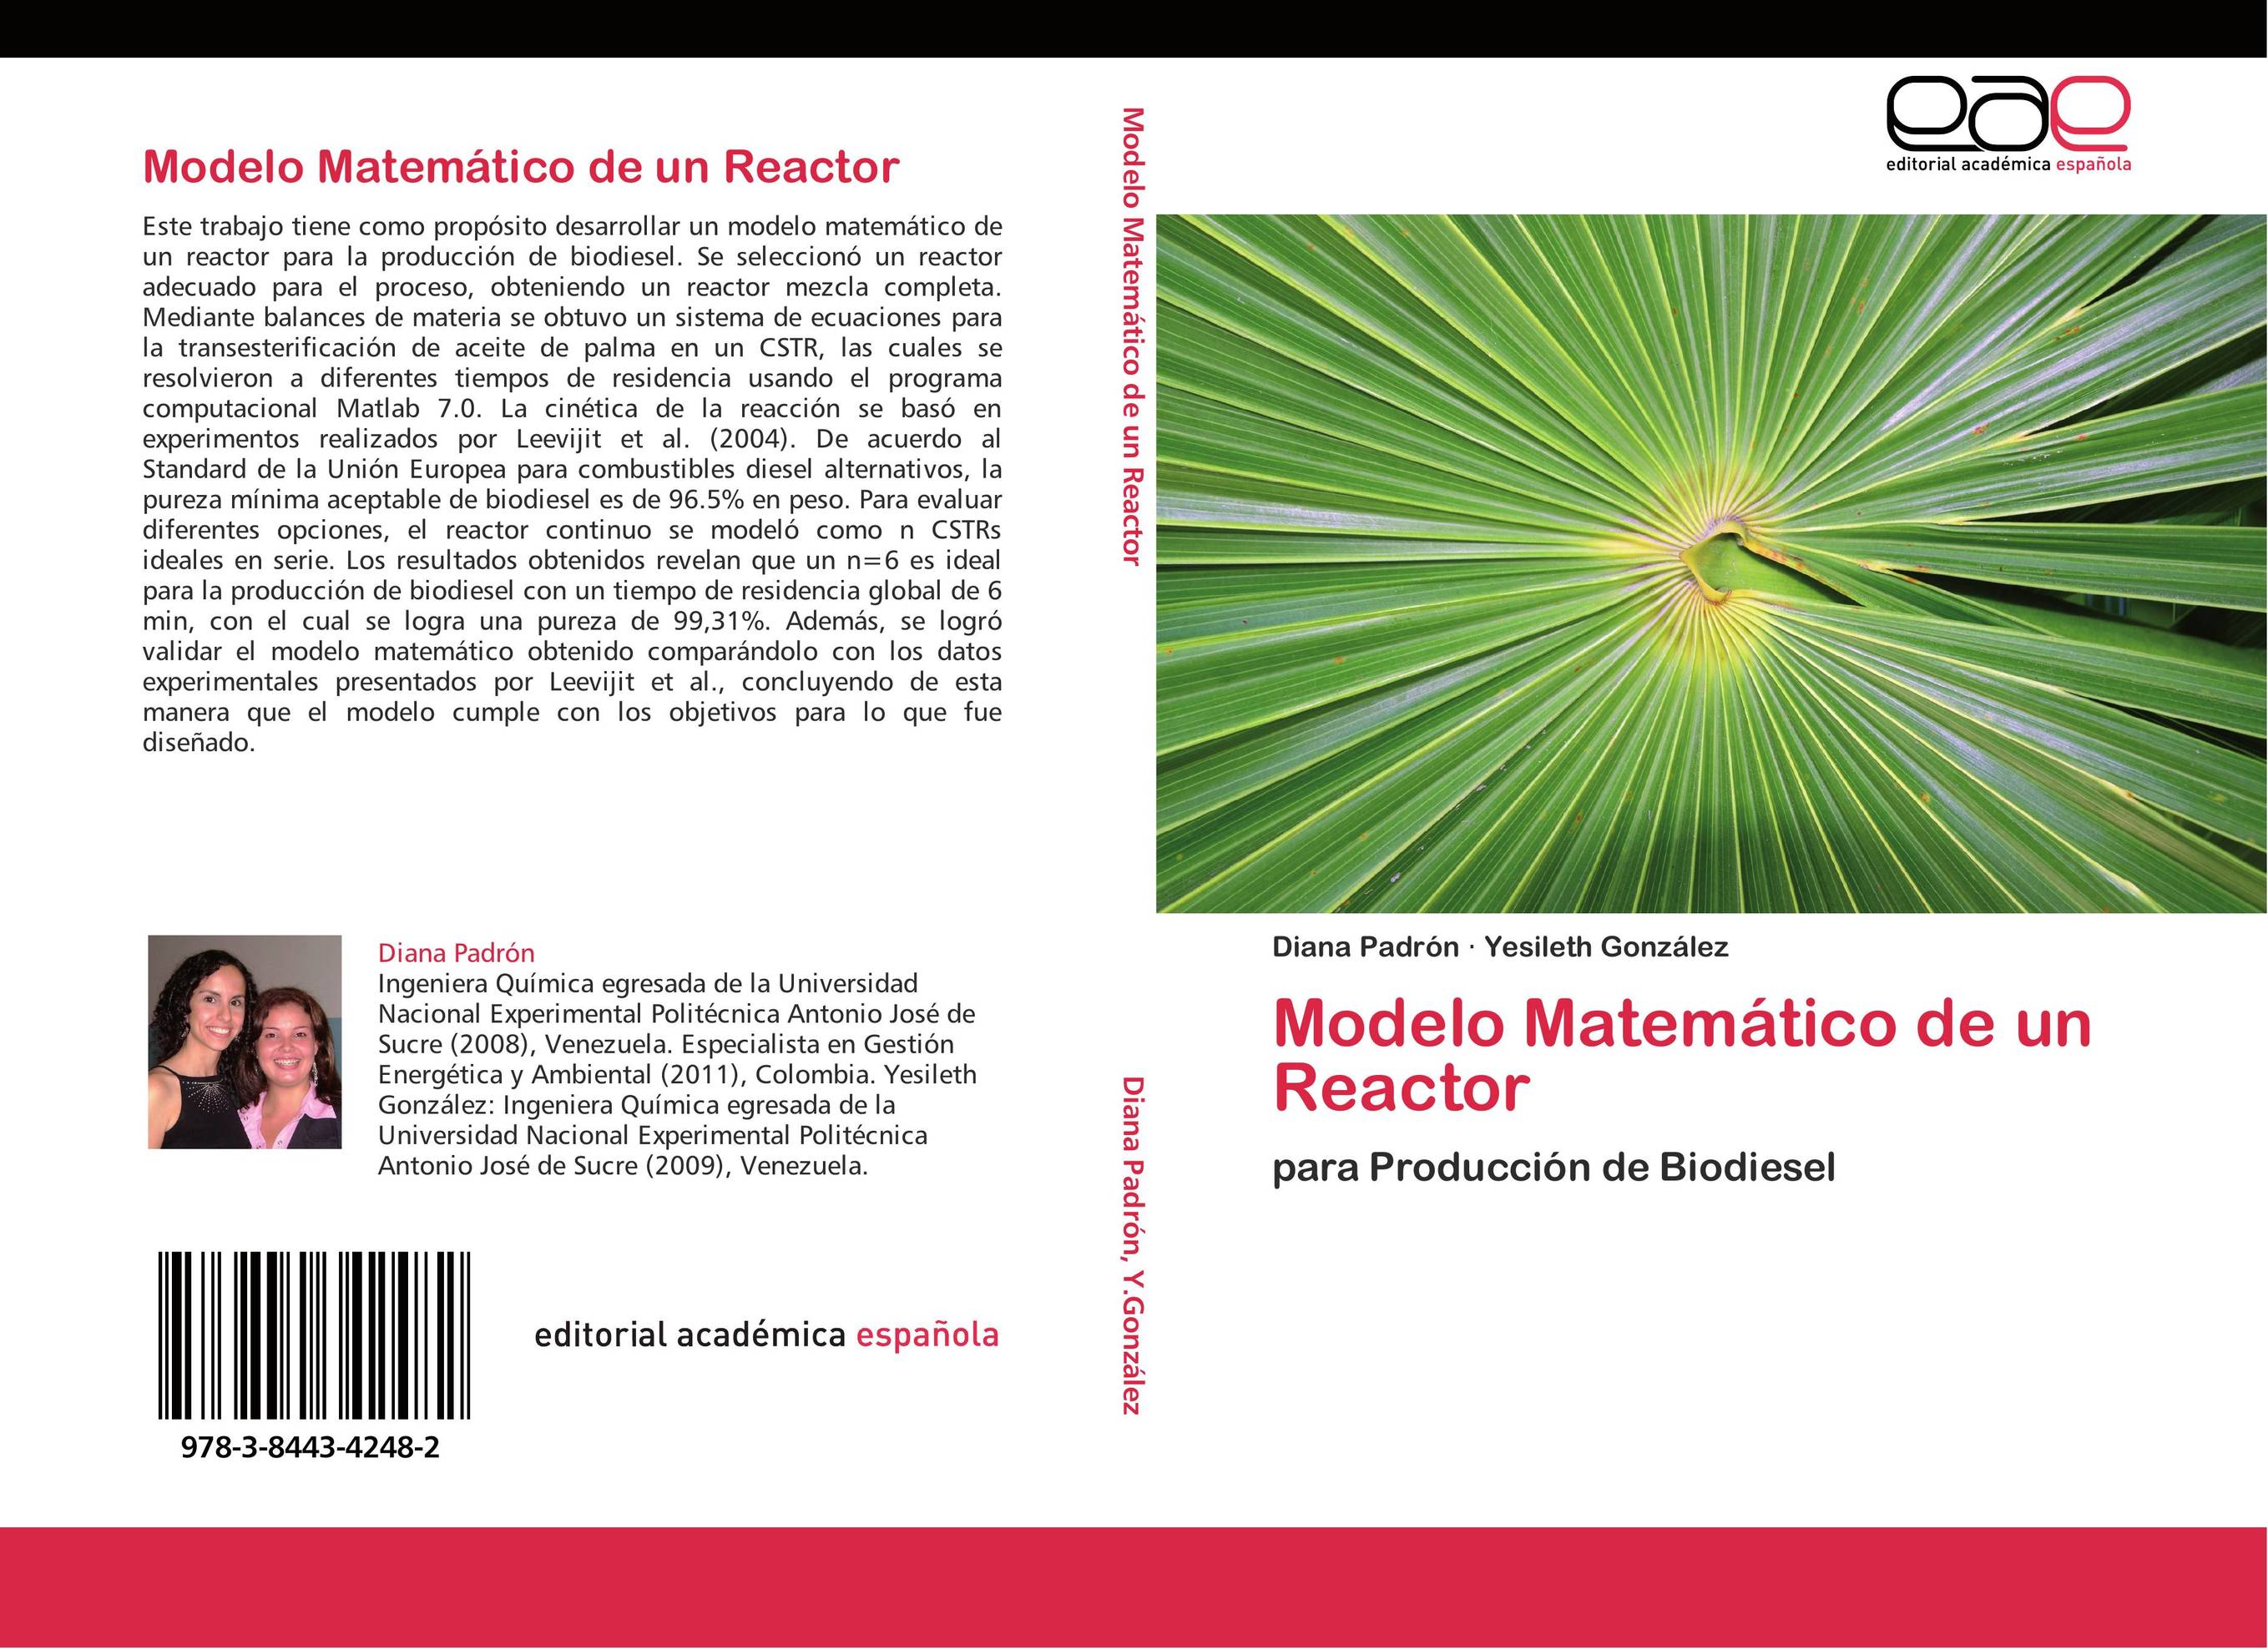 Modelo Matemático de un Reactor